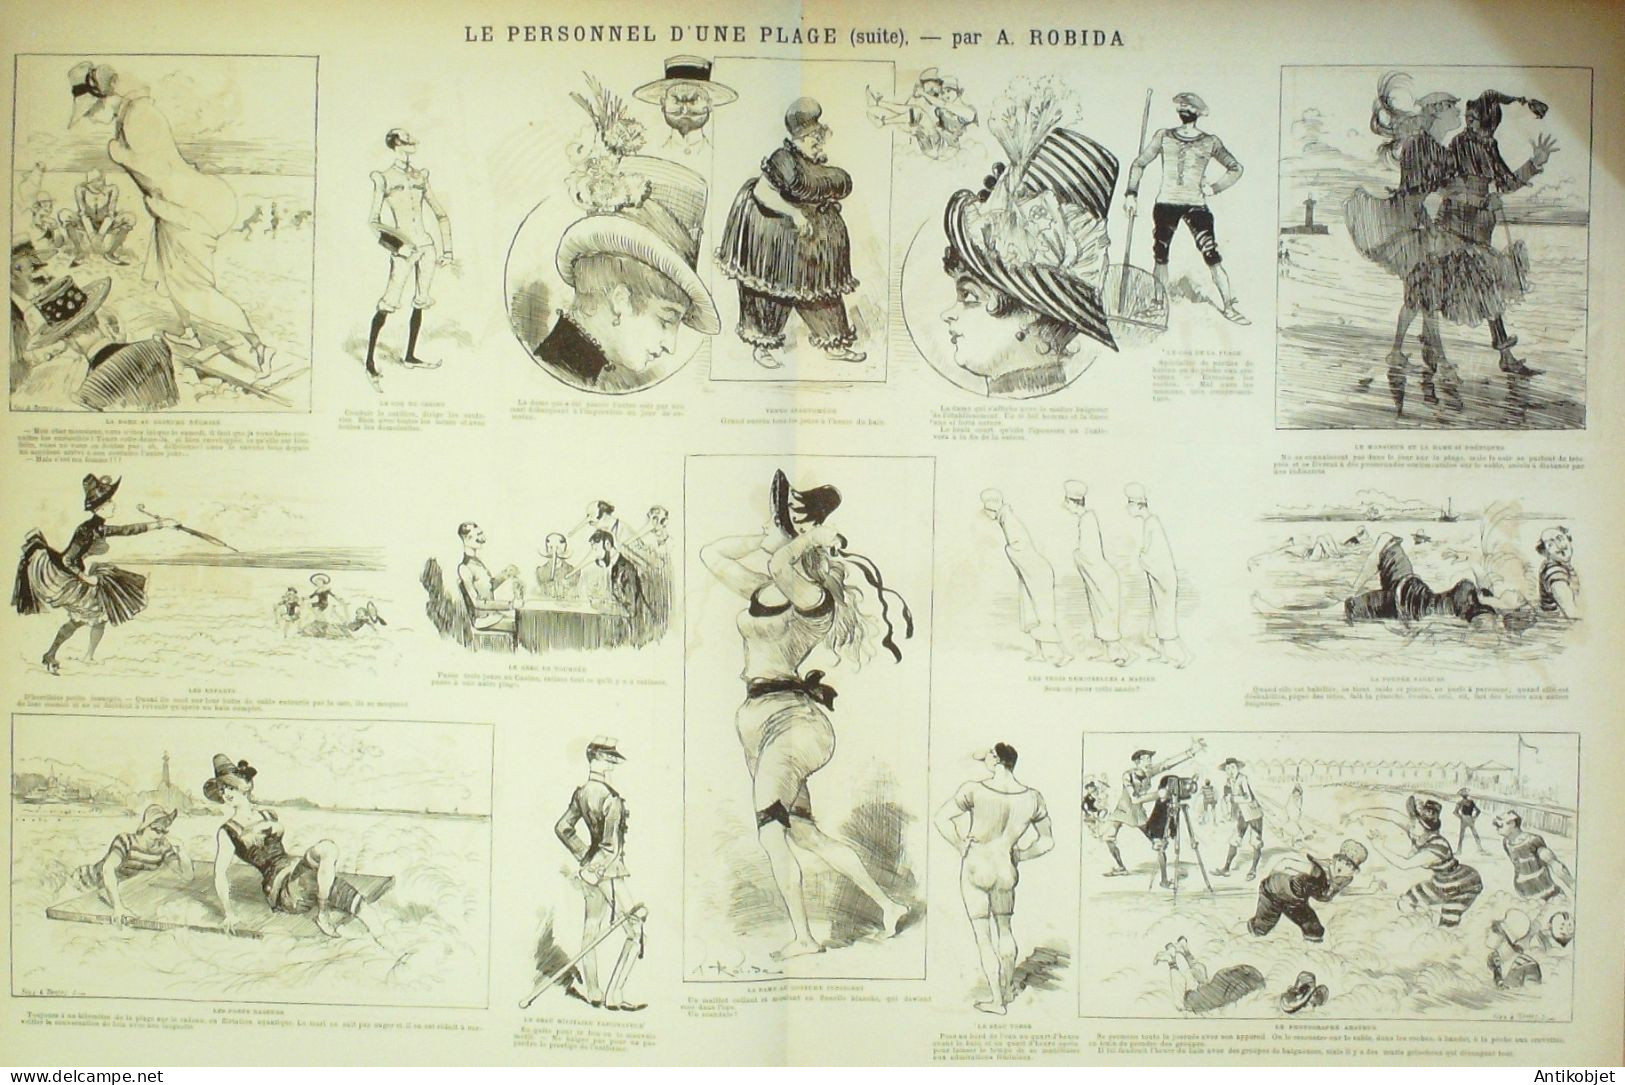 La Caricature 1886 N°344 Personnel De Plage Robida Draner Sorel Trock - Zeitschriften - Vor 1900